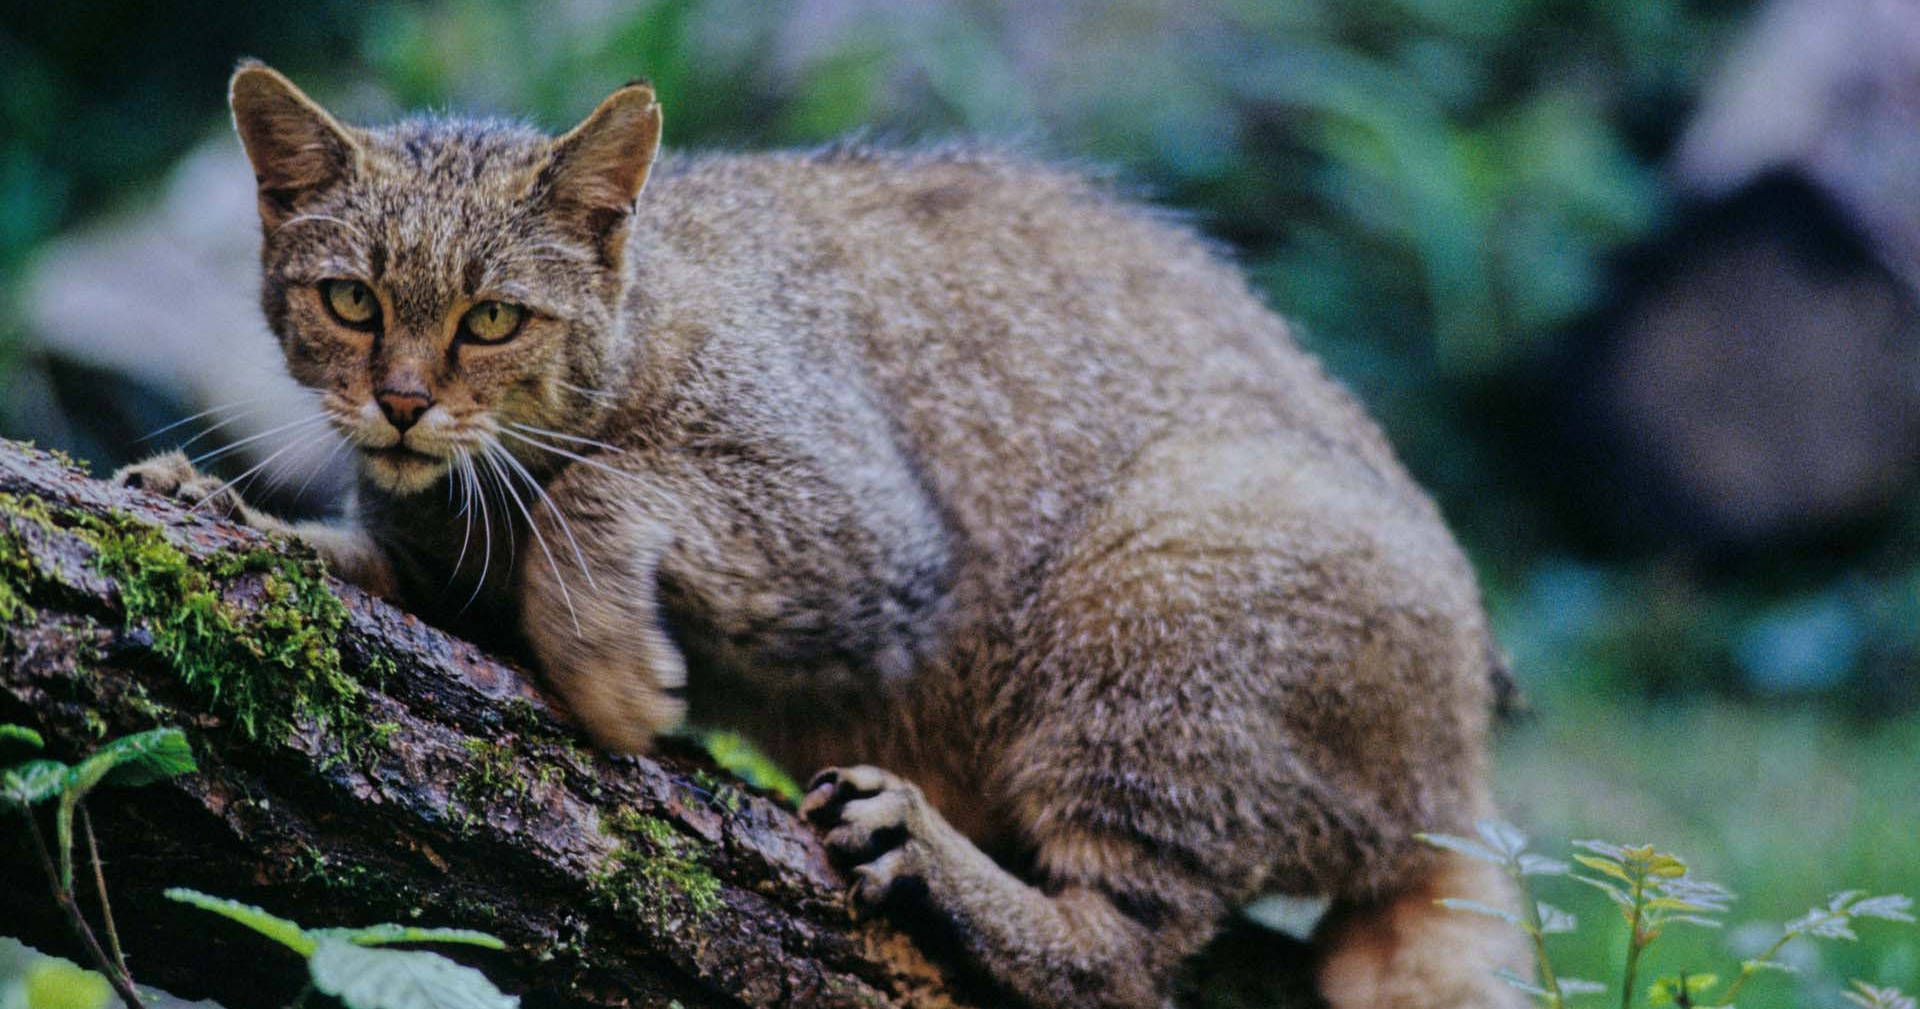 Europäische Wildkatze auf Baumstamm (Foto: Thomas Stephan)